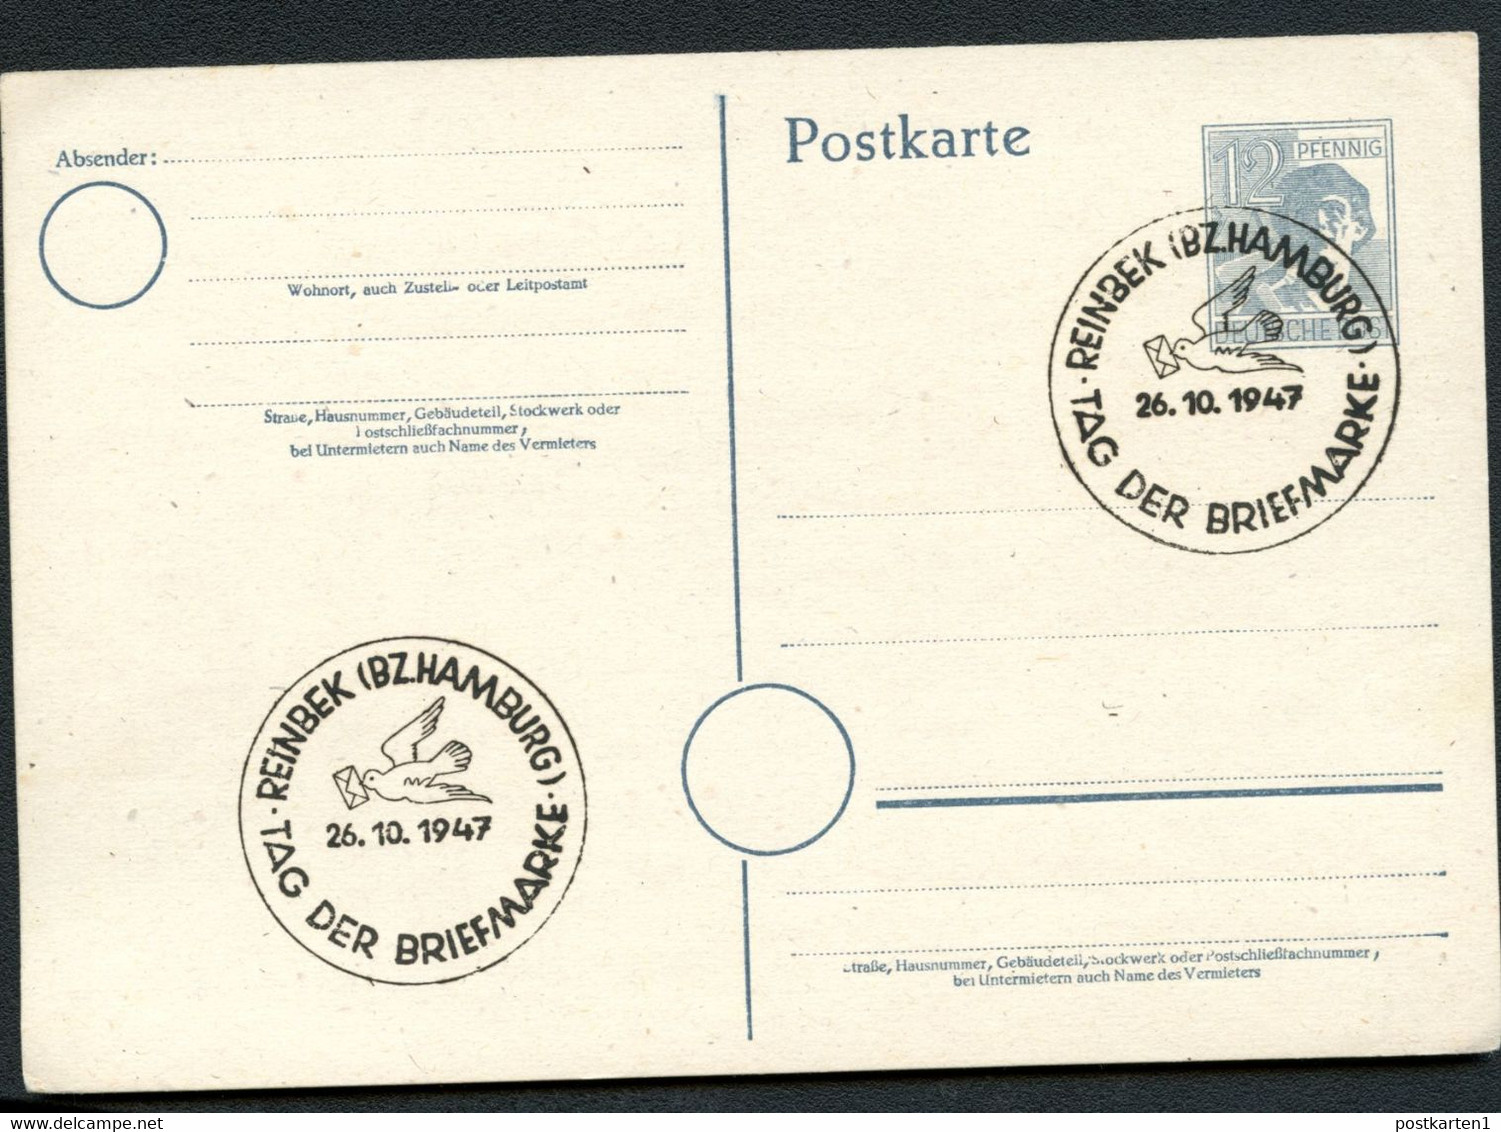 Postkarte P962 Alliierte Besetzung Sost. TAG DER BRIEFMARKE REINBEK 1947 - Ganzsachen